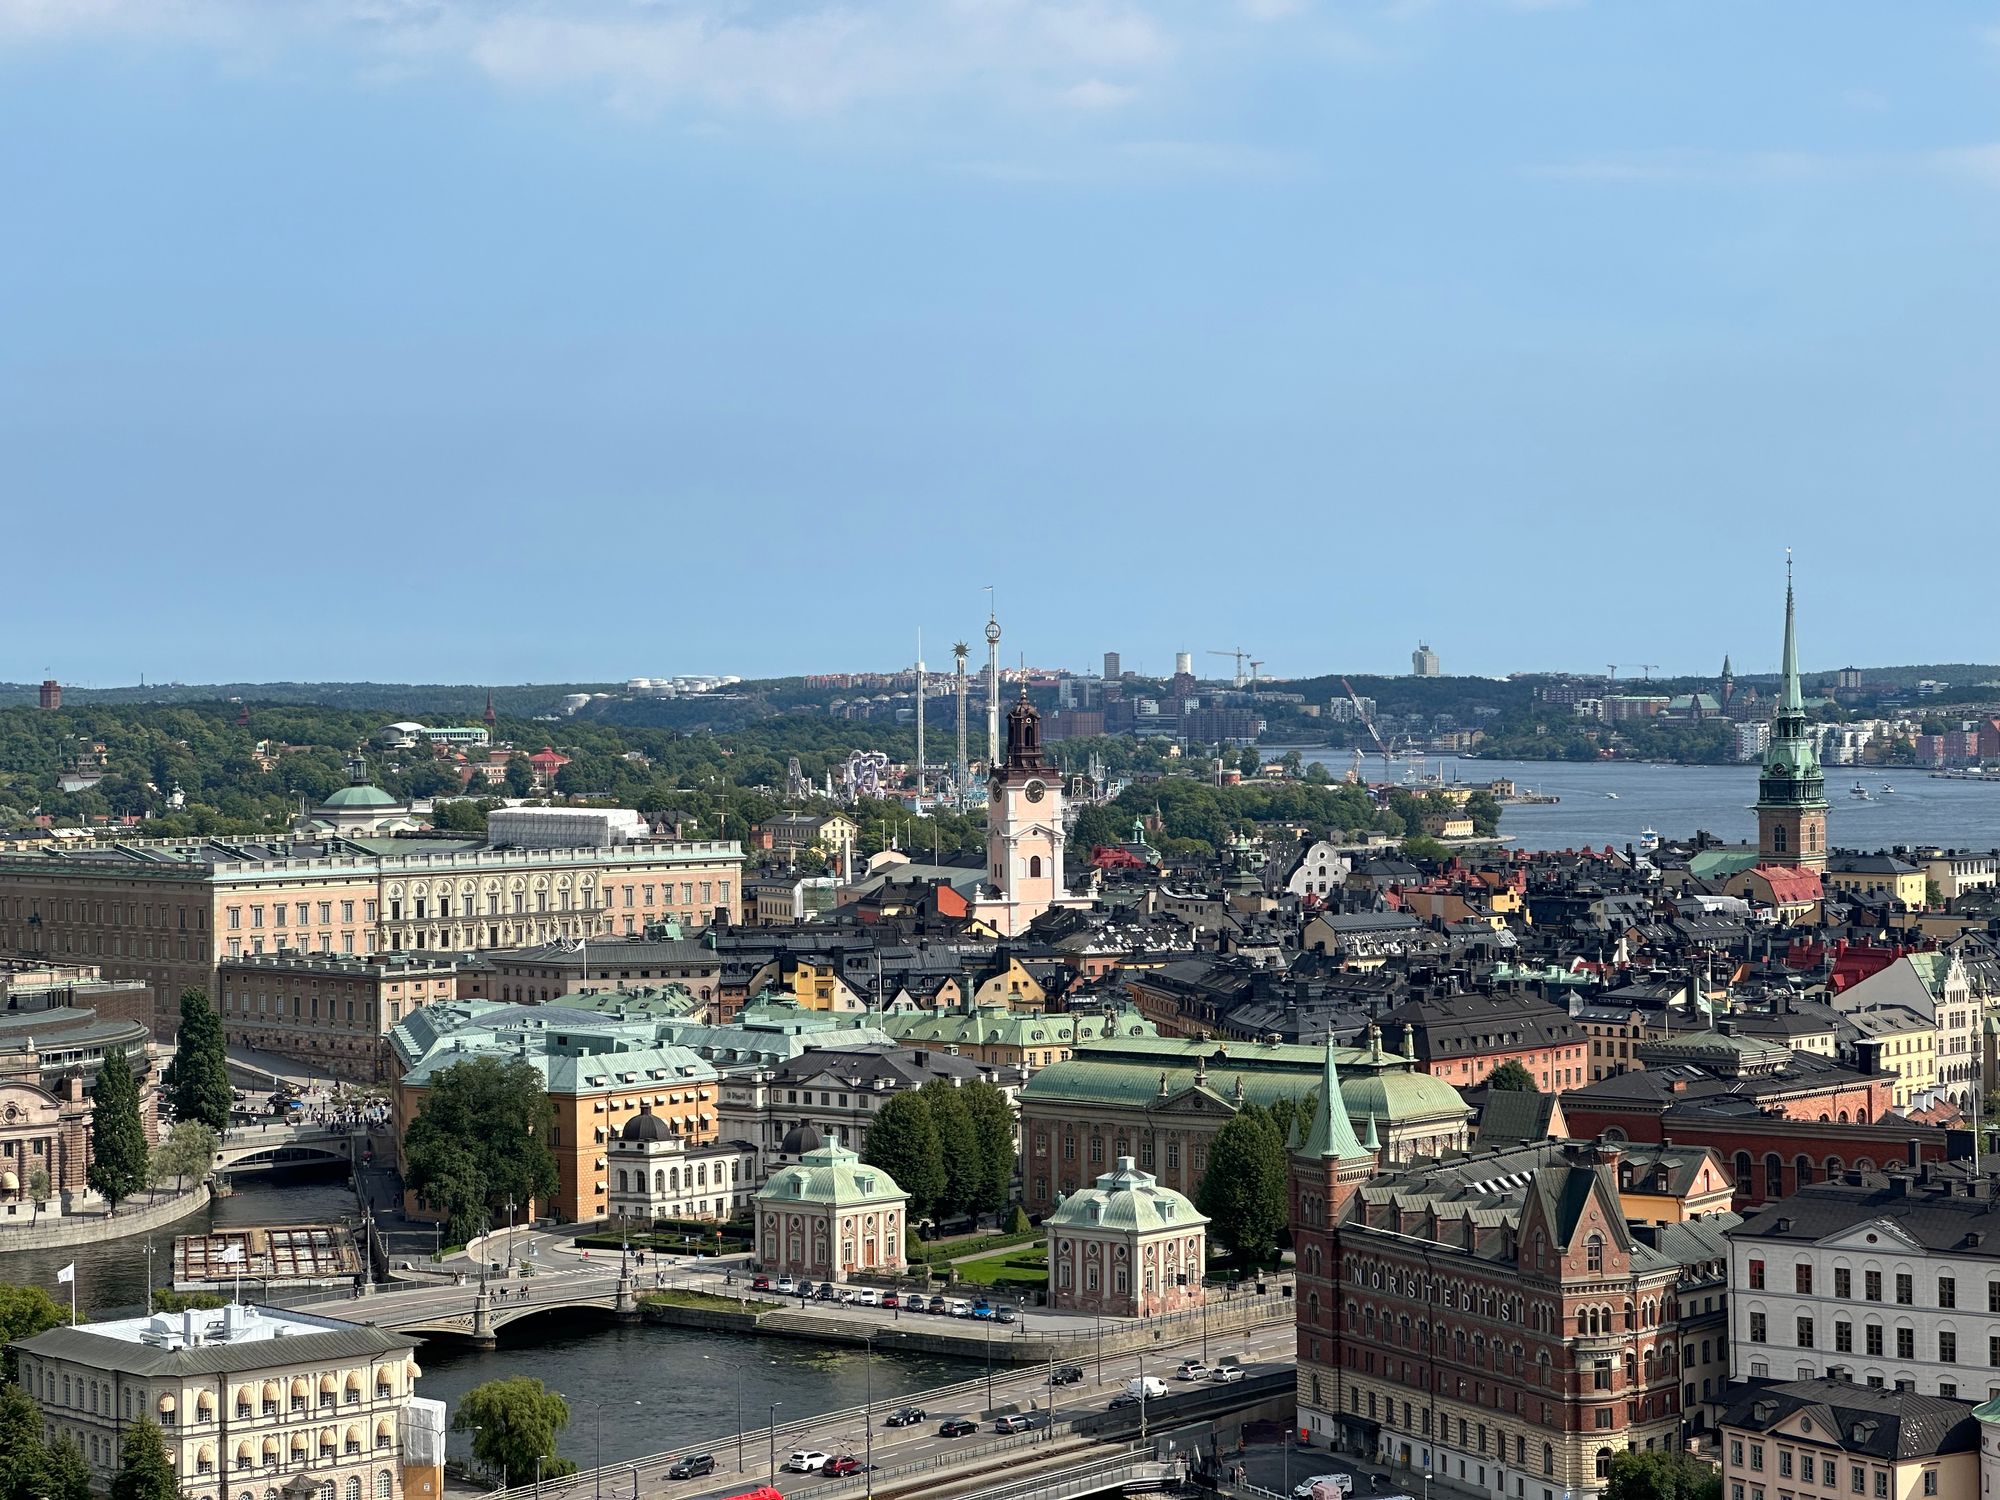 Exchange in Uppsala - Part 5: Visiting Stockholm